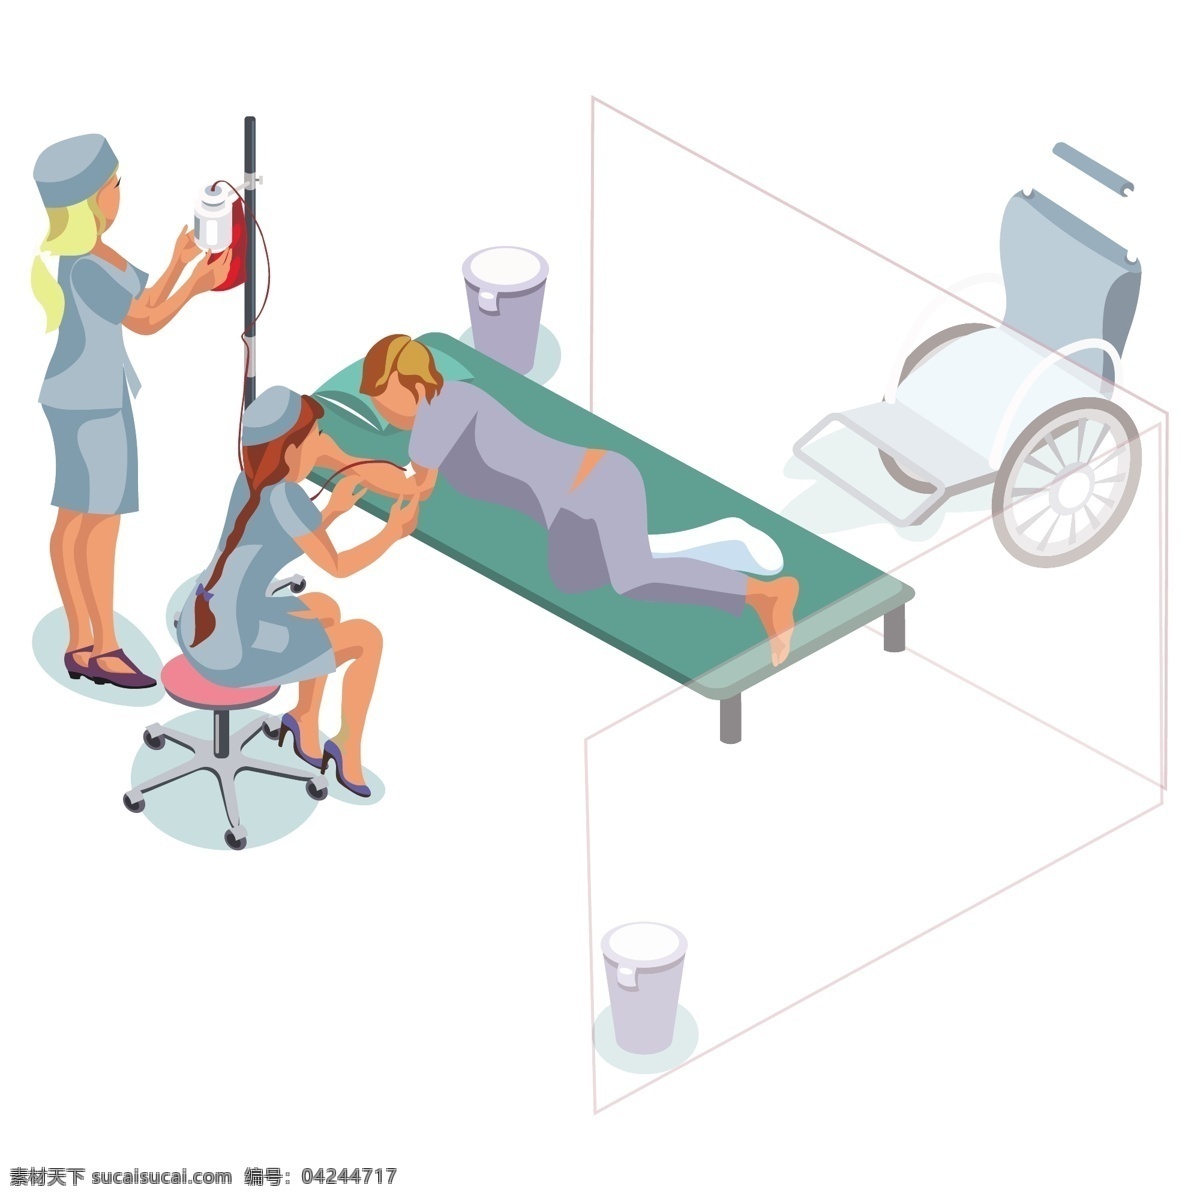 卡通 躺 病床 上 病人 矢量 躺着 躺着的病人 卡通病人 卡通医生 卡通护士 护士 医生 可爱 可爱护士 轮椅